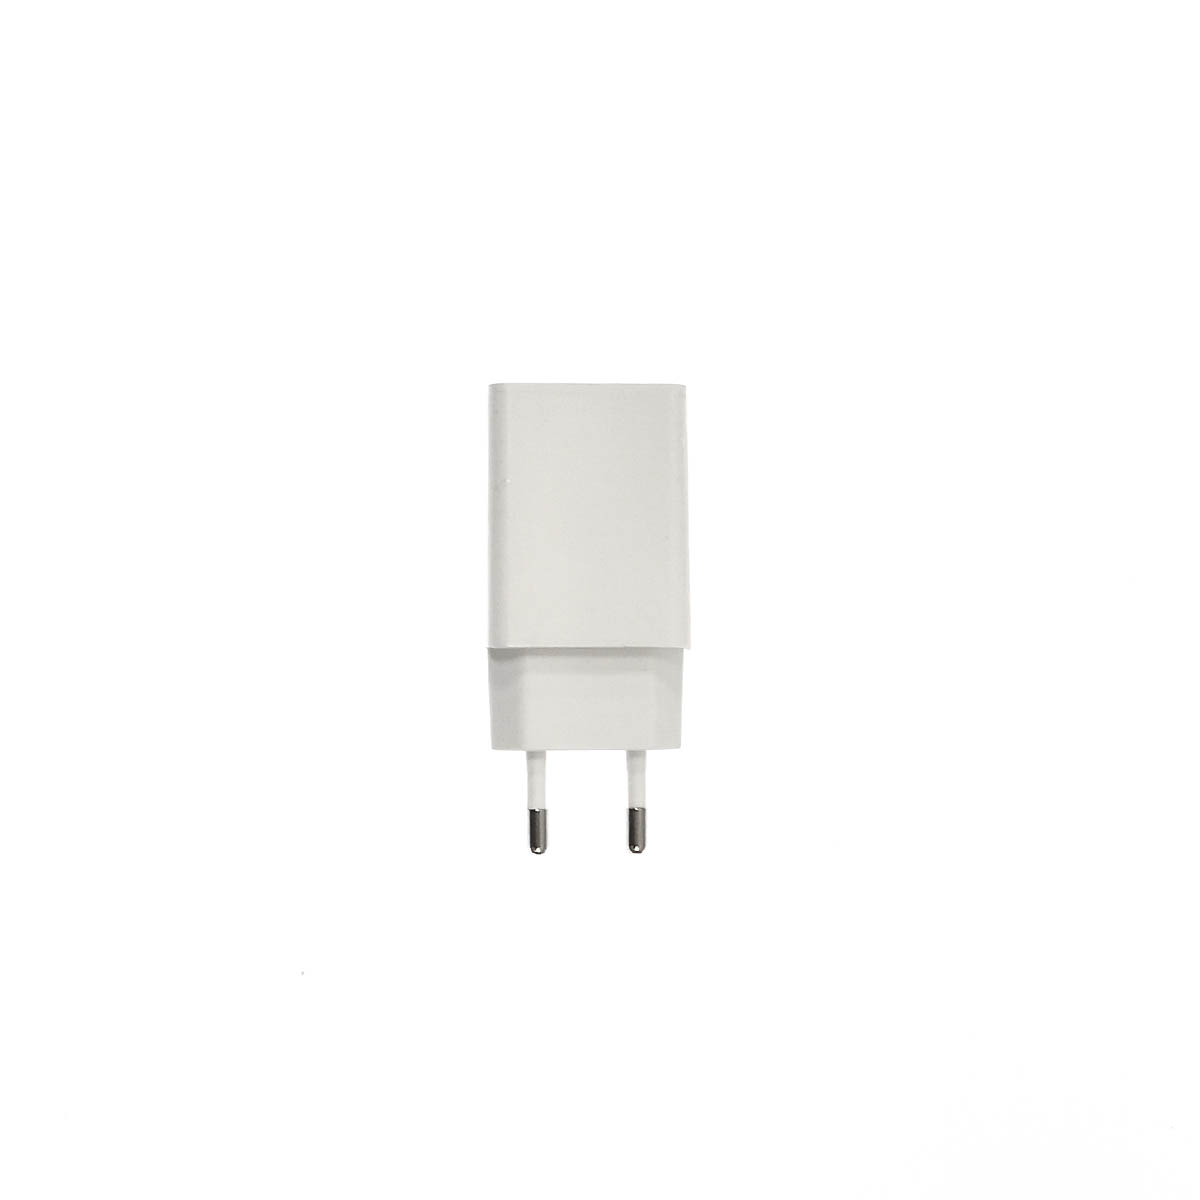 СЗУ (Сетевое зарядное устройство) DENMEN DC01, 2.4A, 1 USB, цвет белый